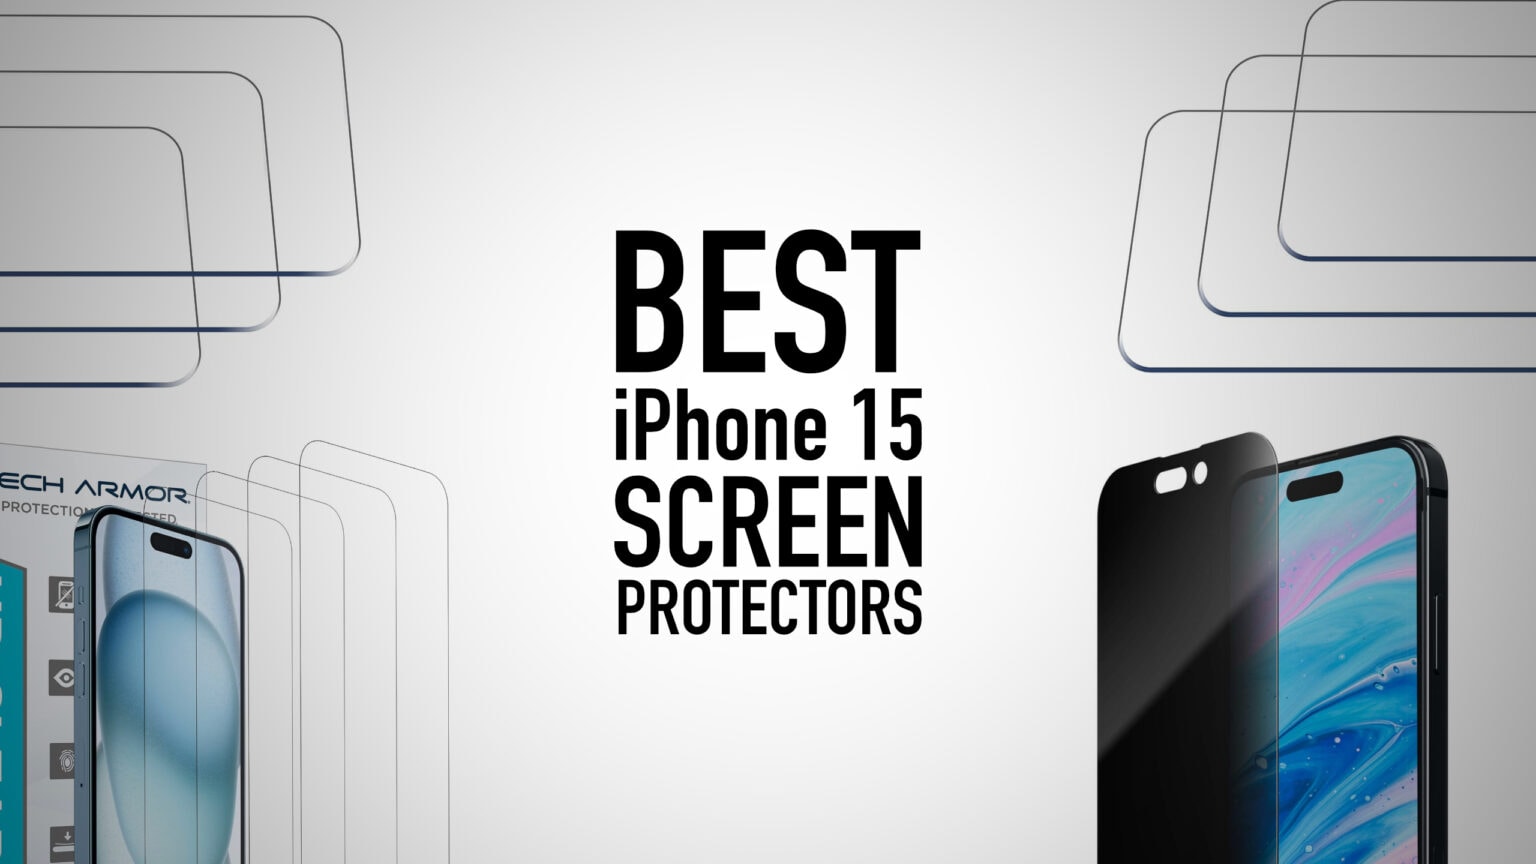 Best iPhone 15 screen protectors